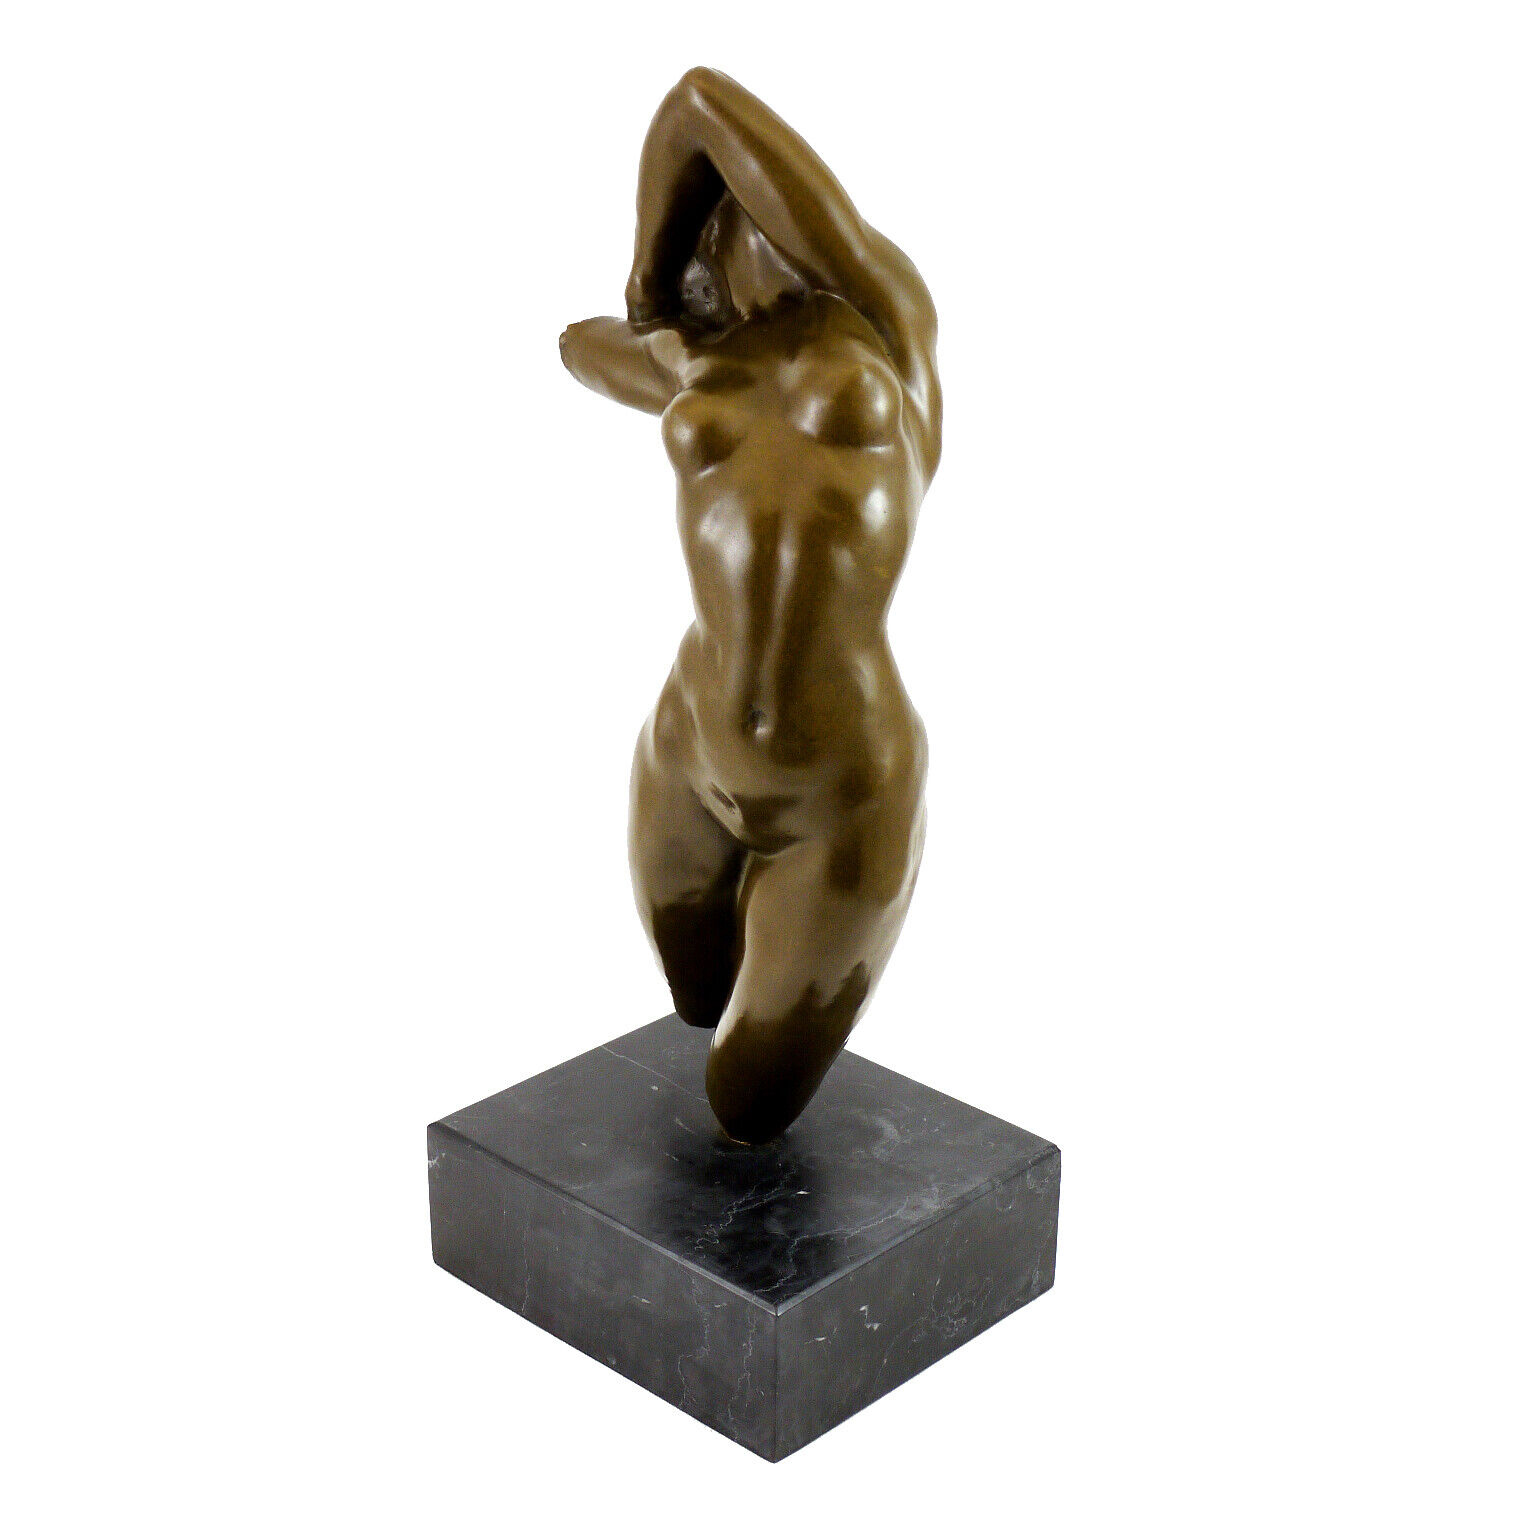 Torso of Adele Rodin